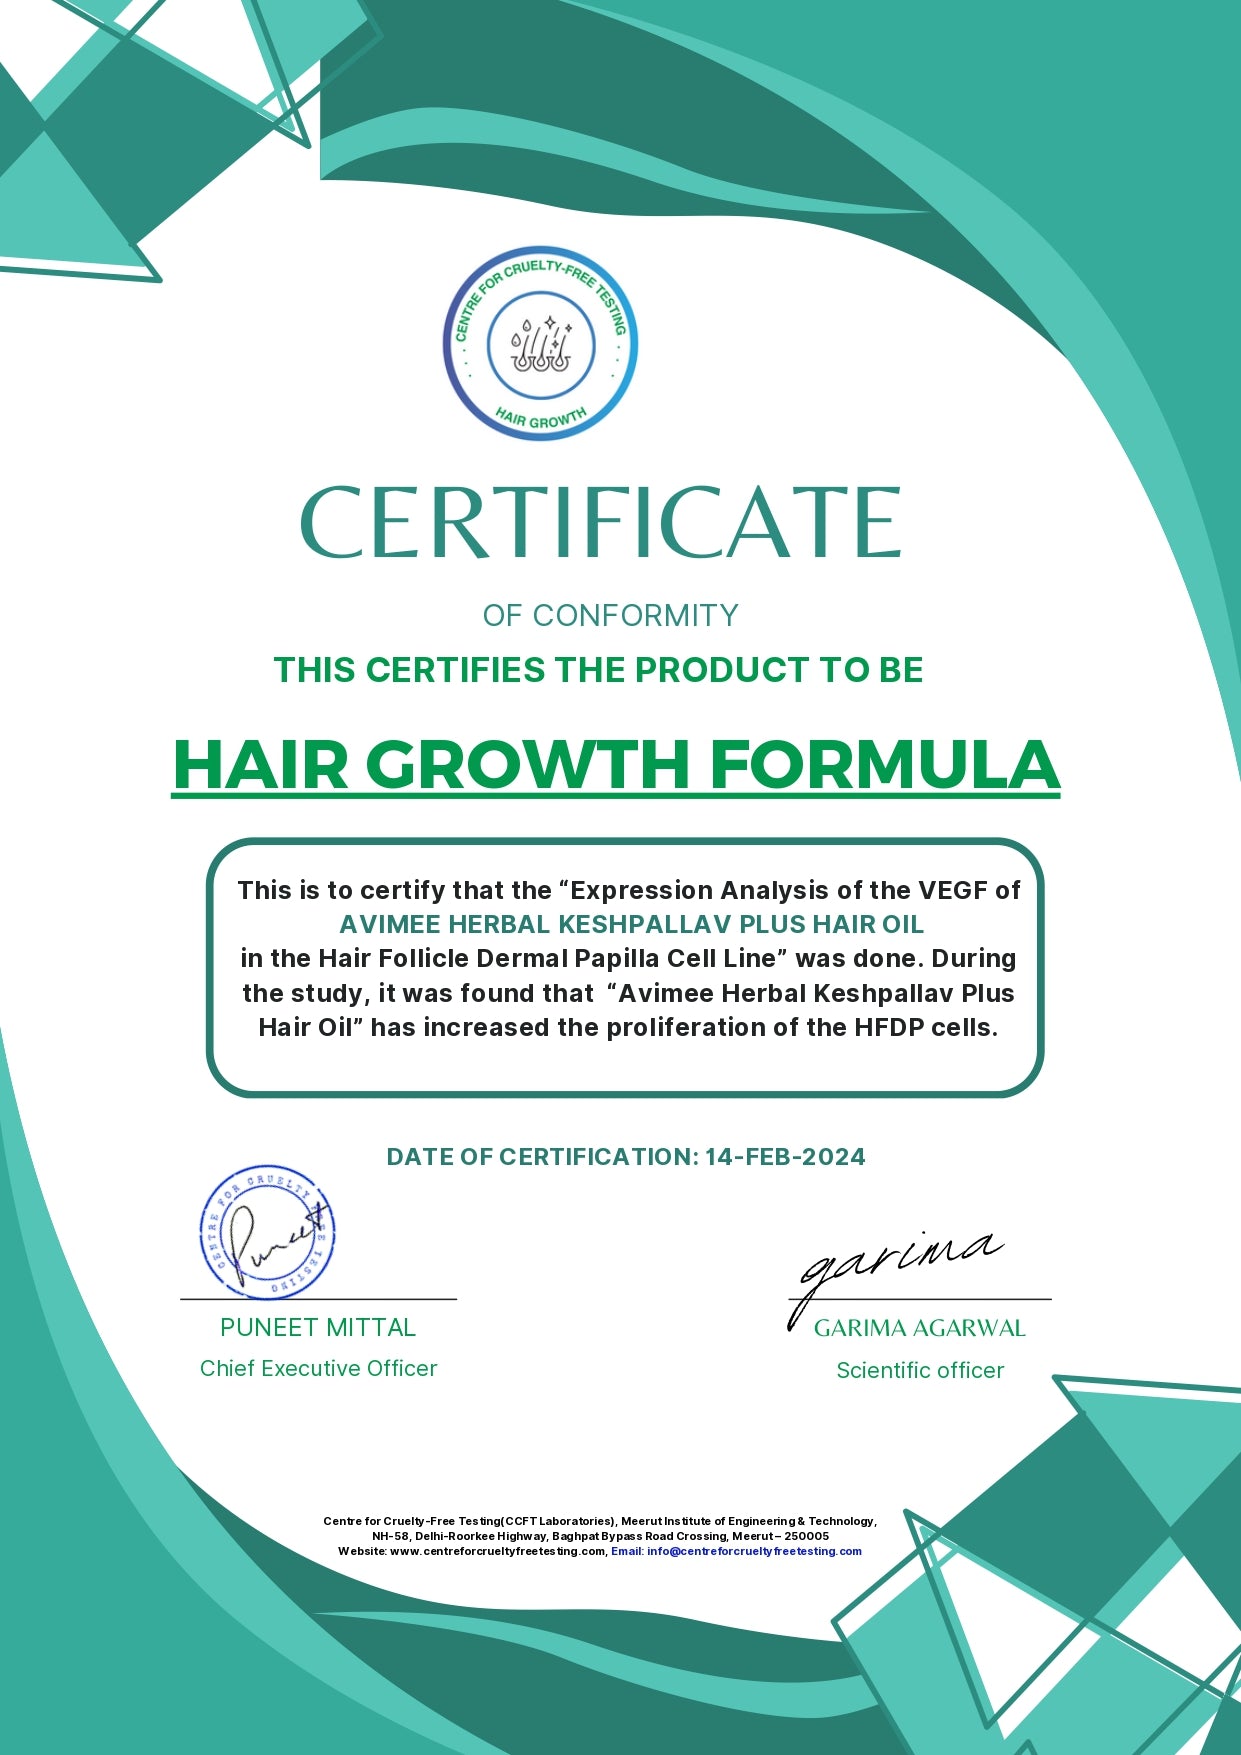 Keshpallav Plus Daily Hair Oil for Hair Growth